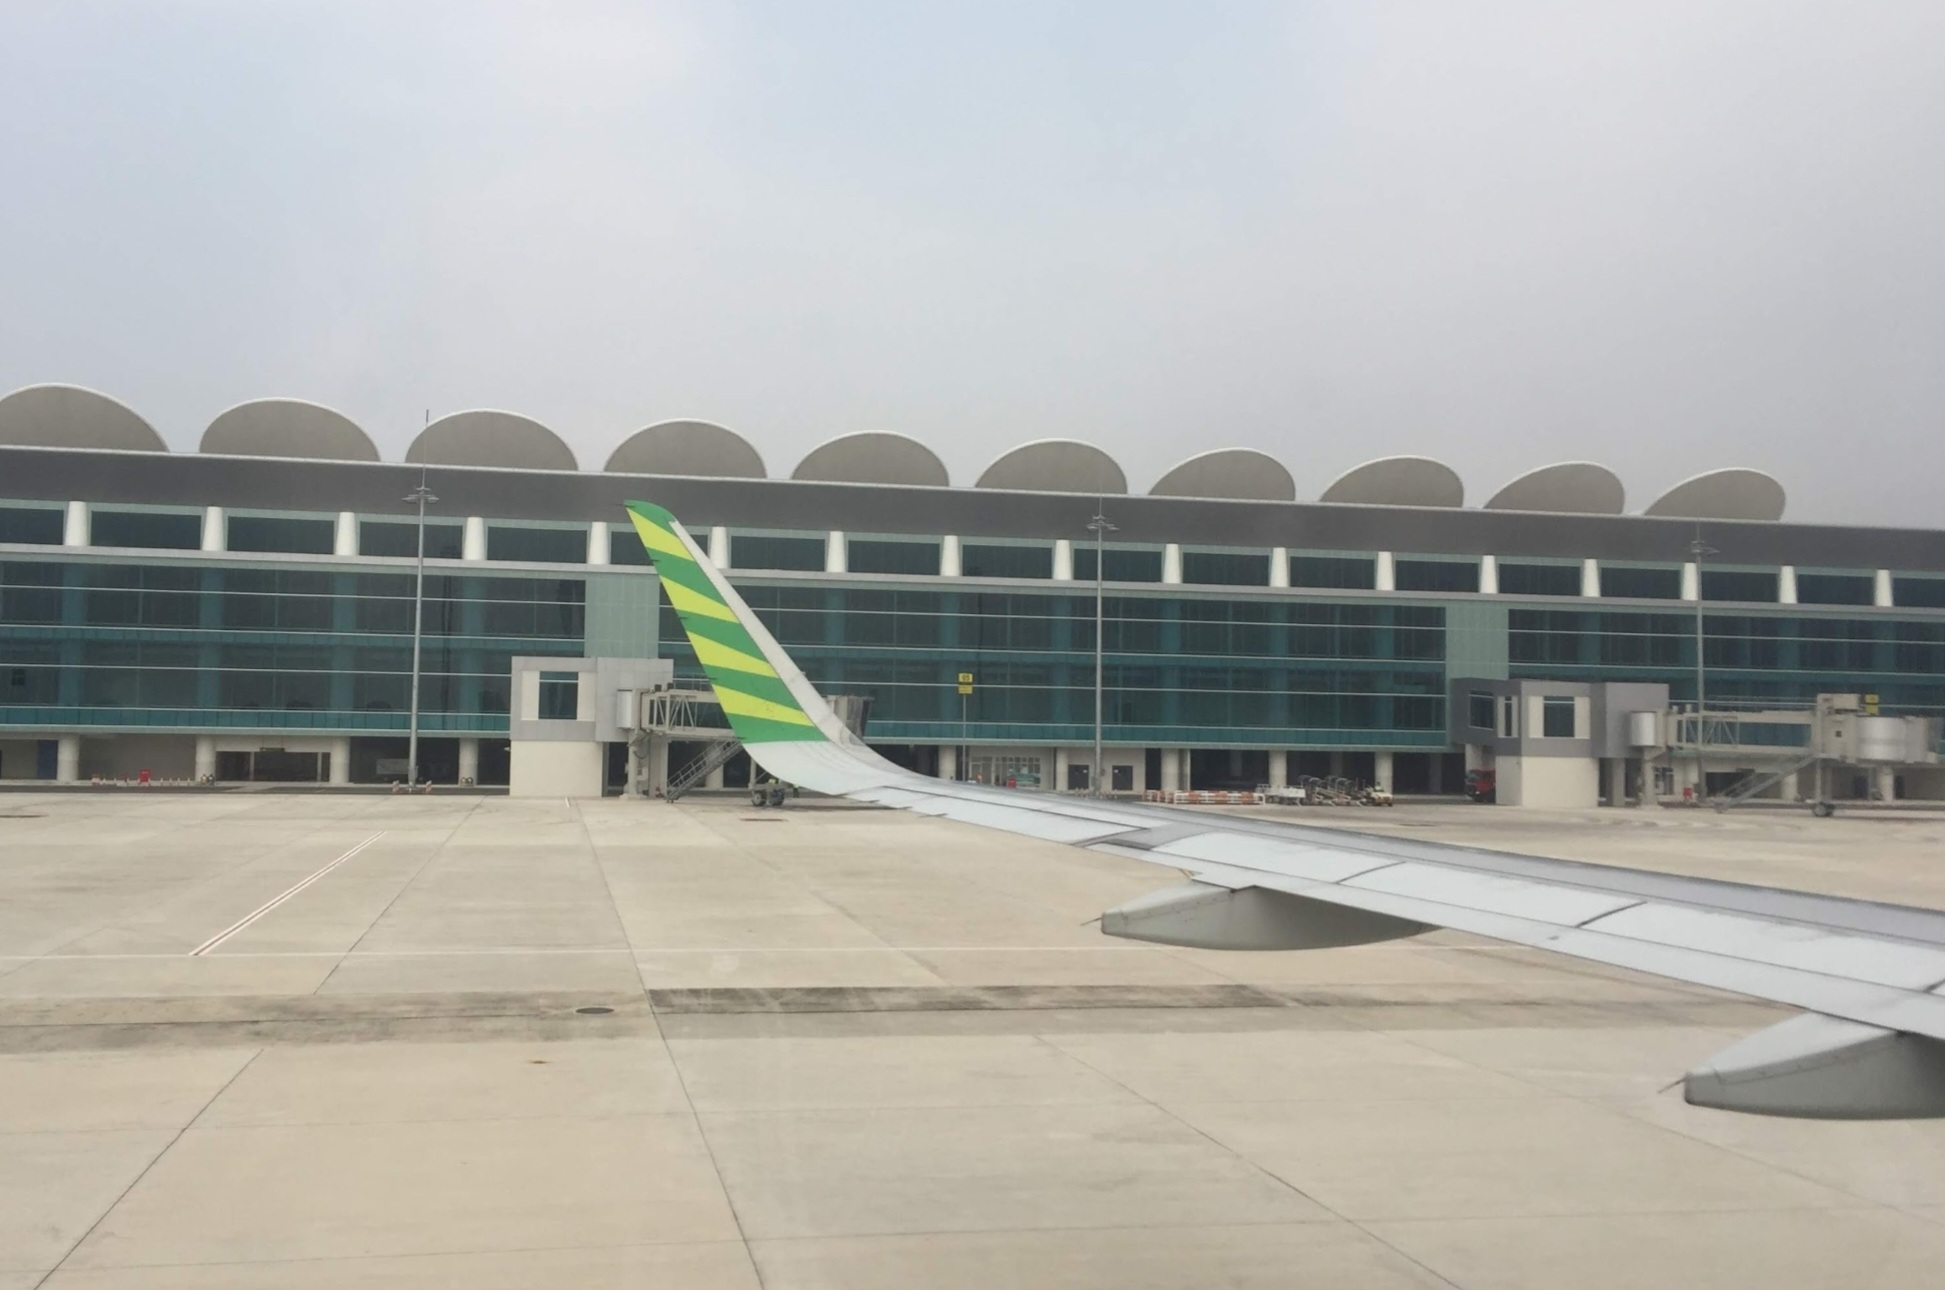 Baru 3 Maskapai di Bandara Kertajati, Kemenhub Minta Ditambah dan Buka Rute Baru Lombok, Kalimantan - Sumatera